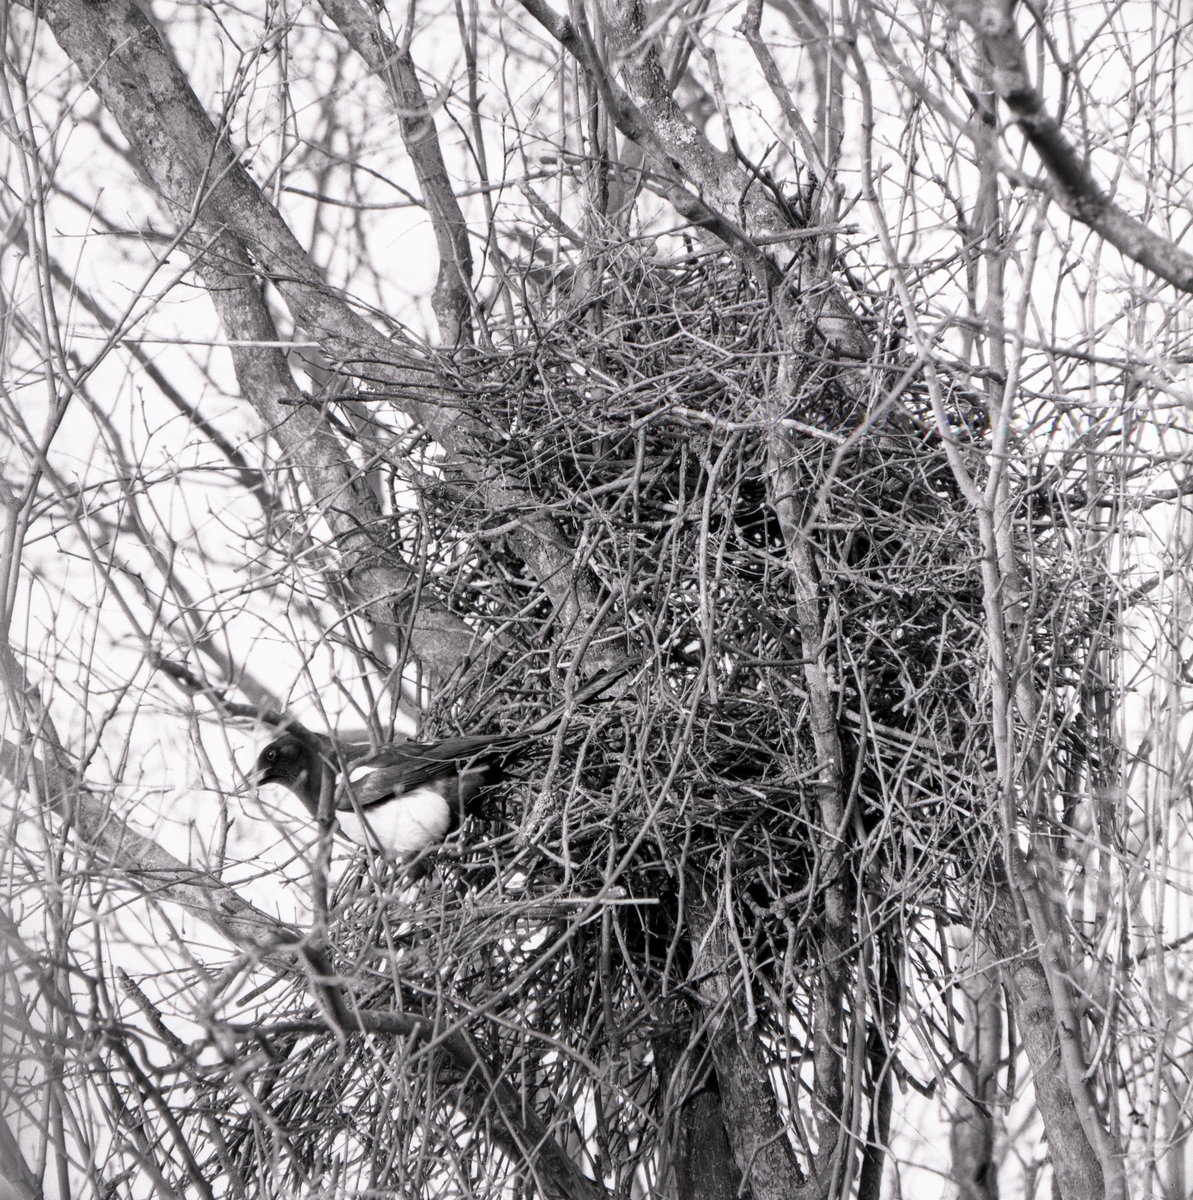 Skata vid sitt bo högt upp i ett träd, april 1975.